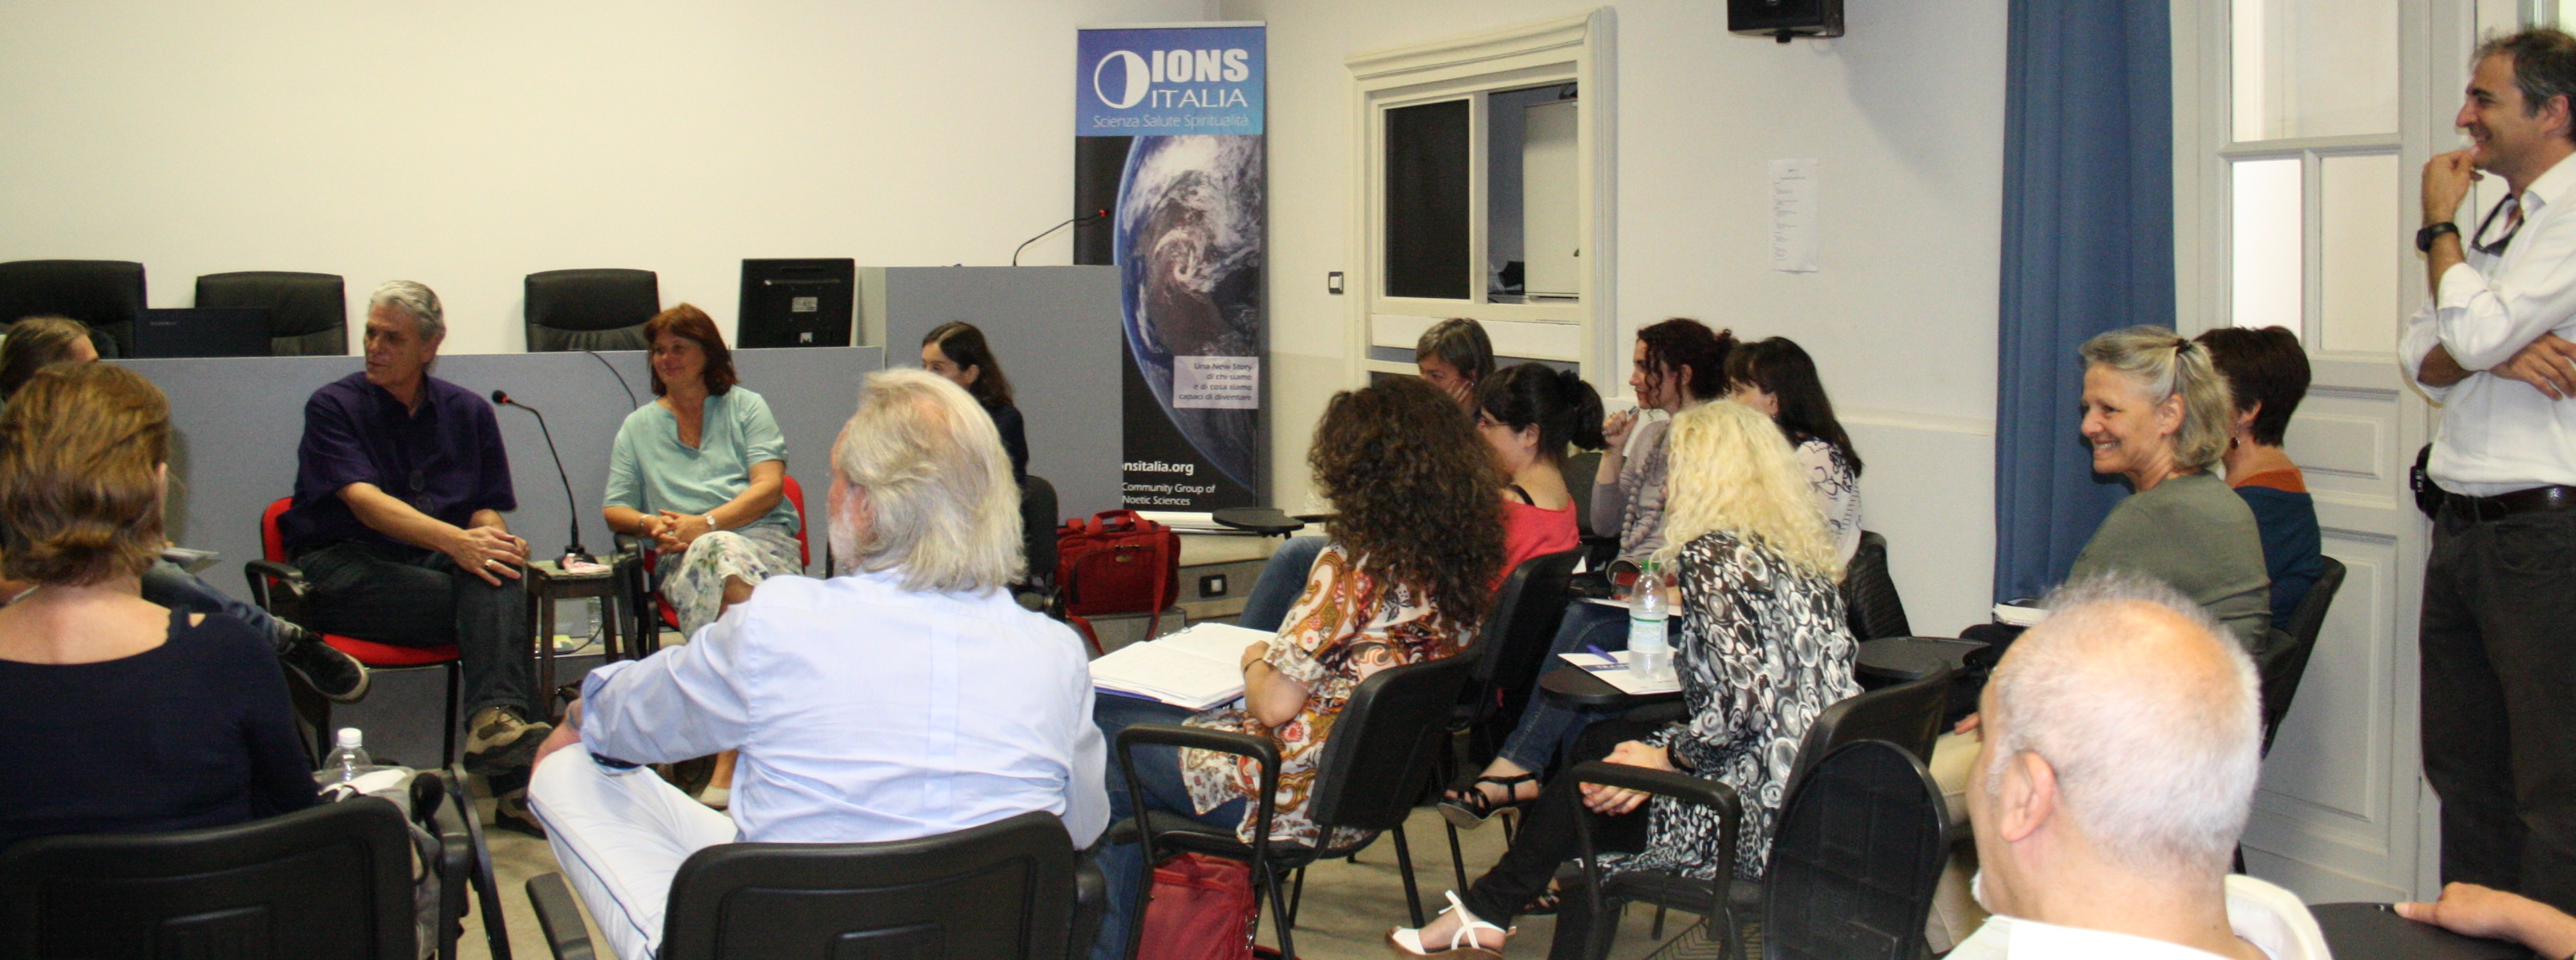 Andrea Leone e la conclusione del Training IADC 2015 a Torino